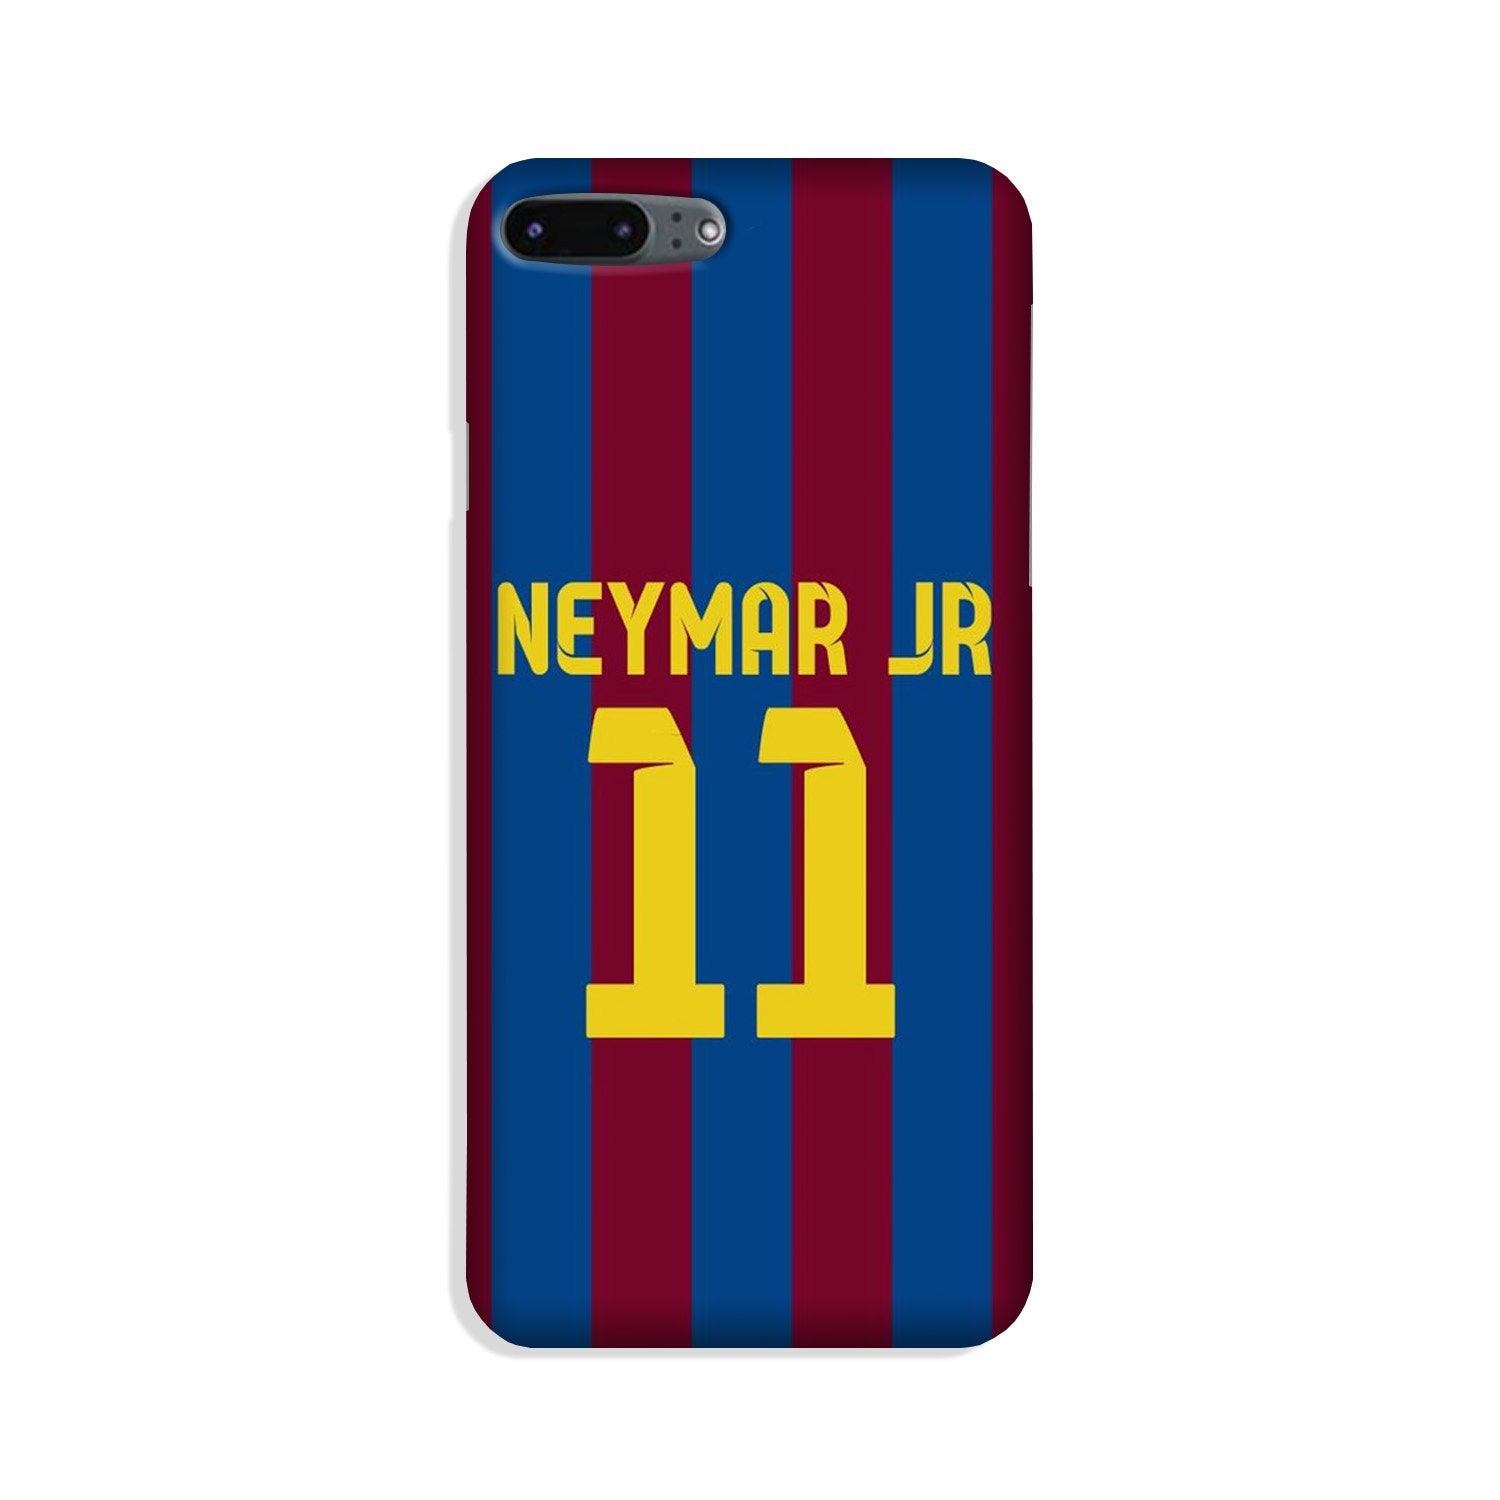 Neymar Jr Case for iPhone 8 Plus(Design - 162)